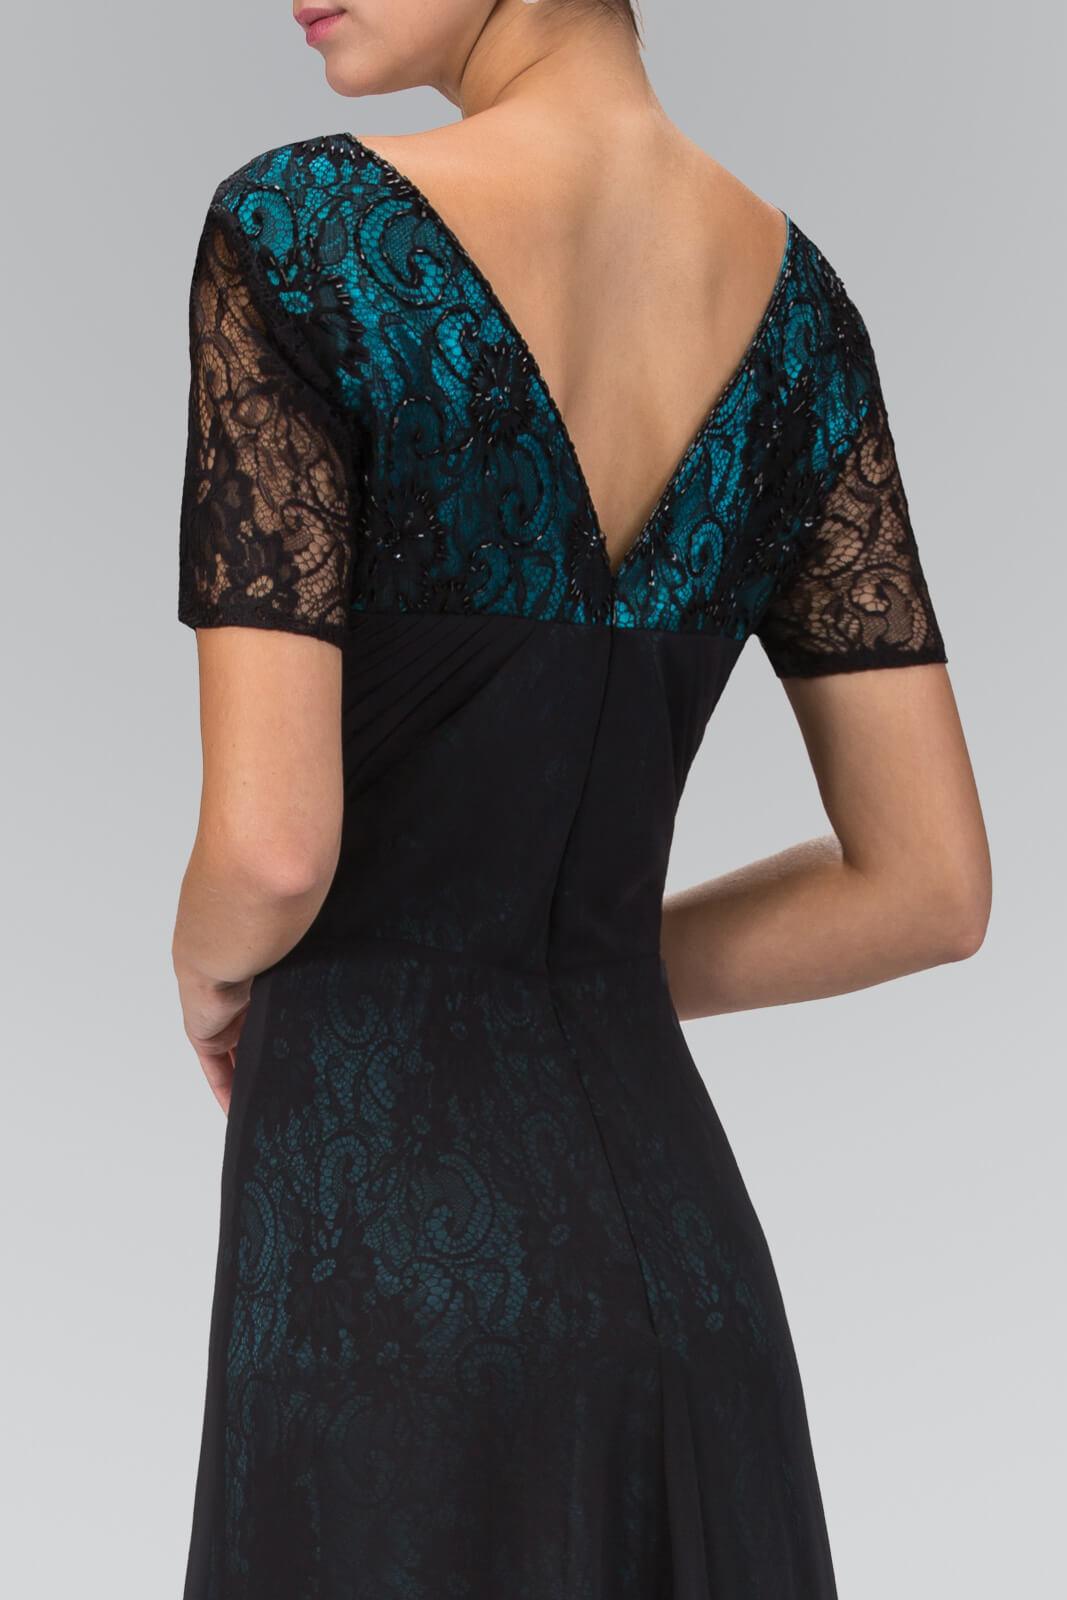 Short Sleeve Lace Embellished V-Neck Long Dress - The Dress Outlet Elizabeth K